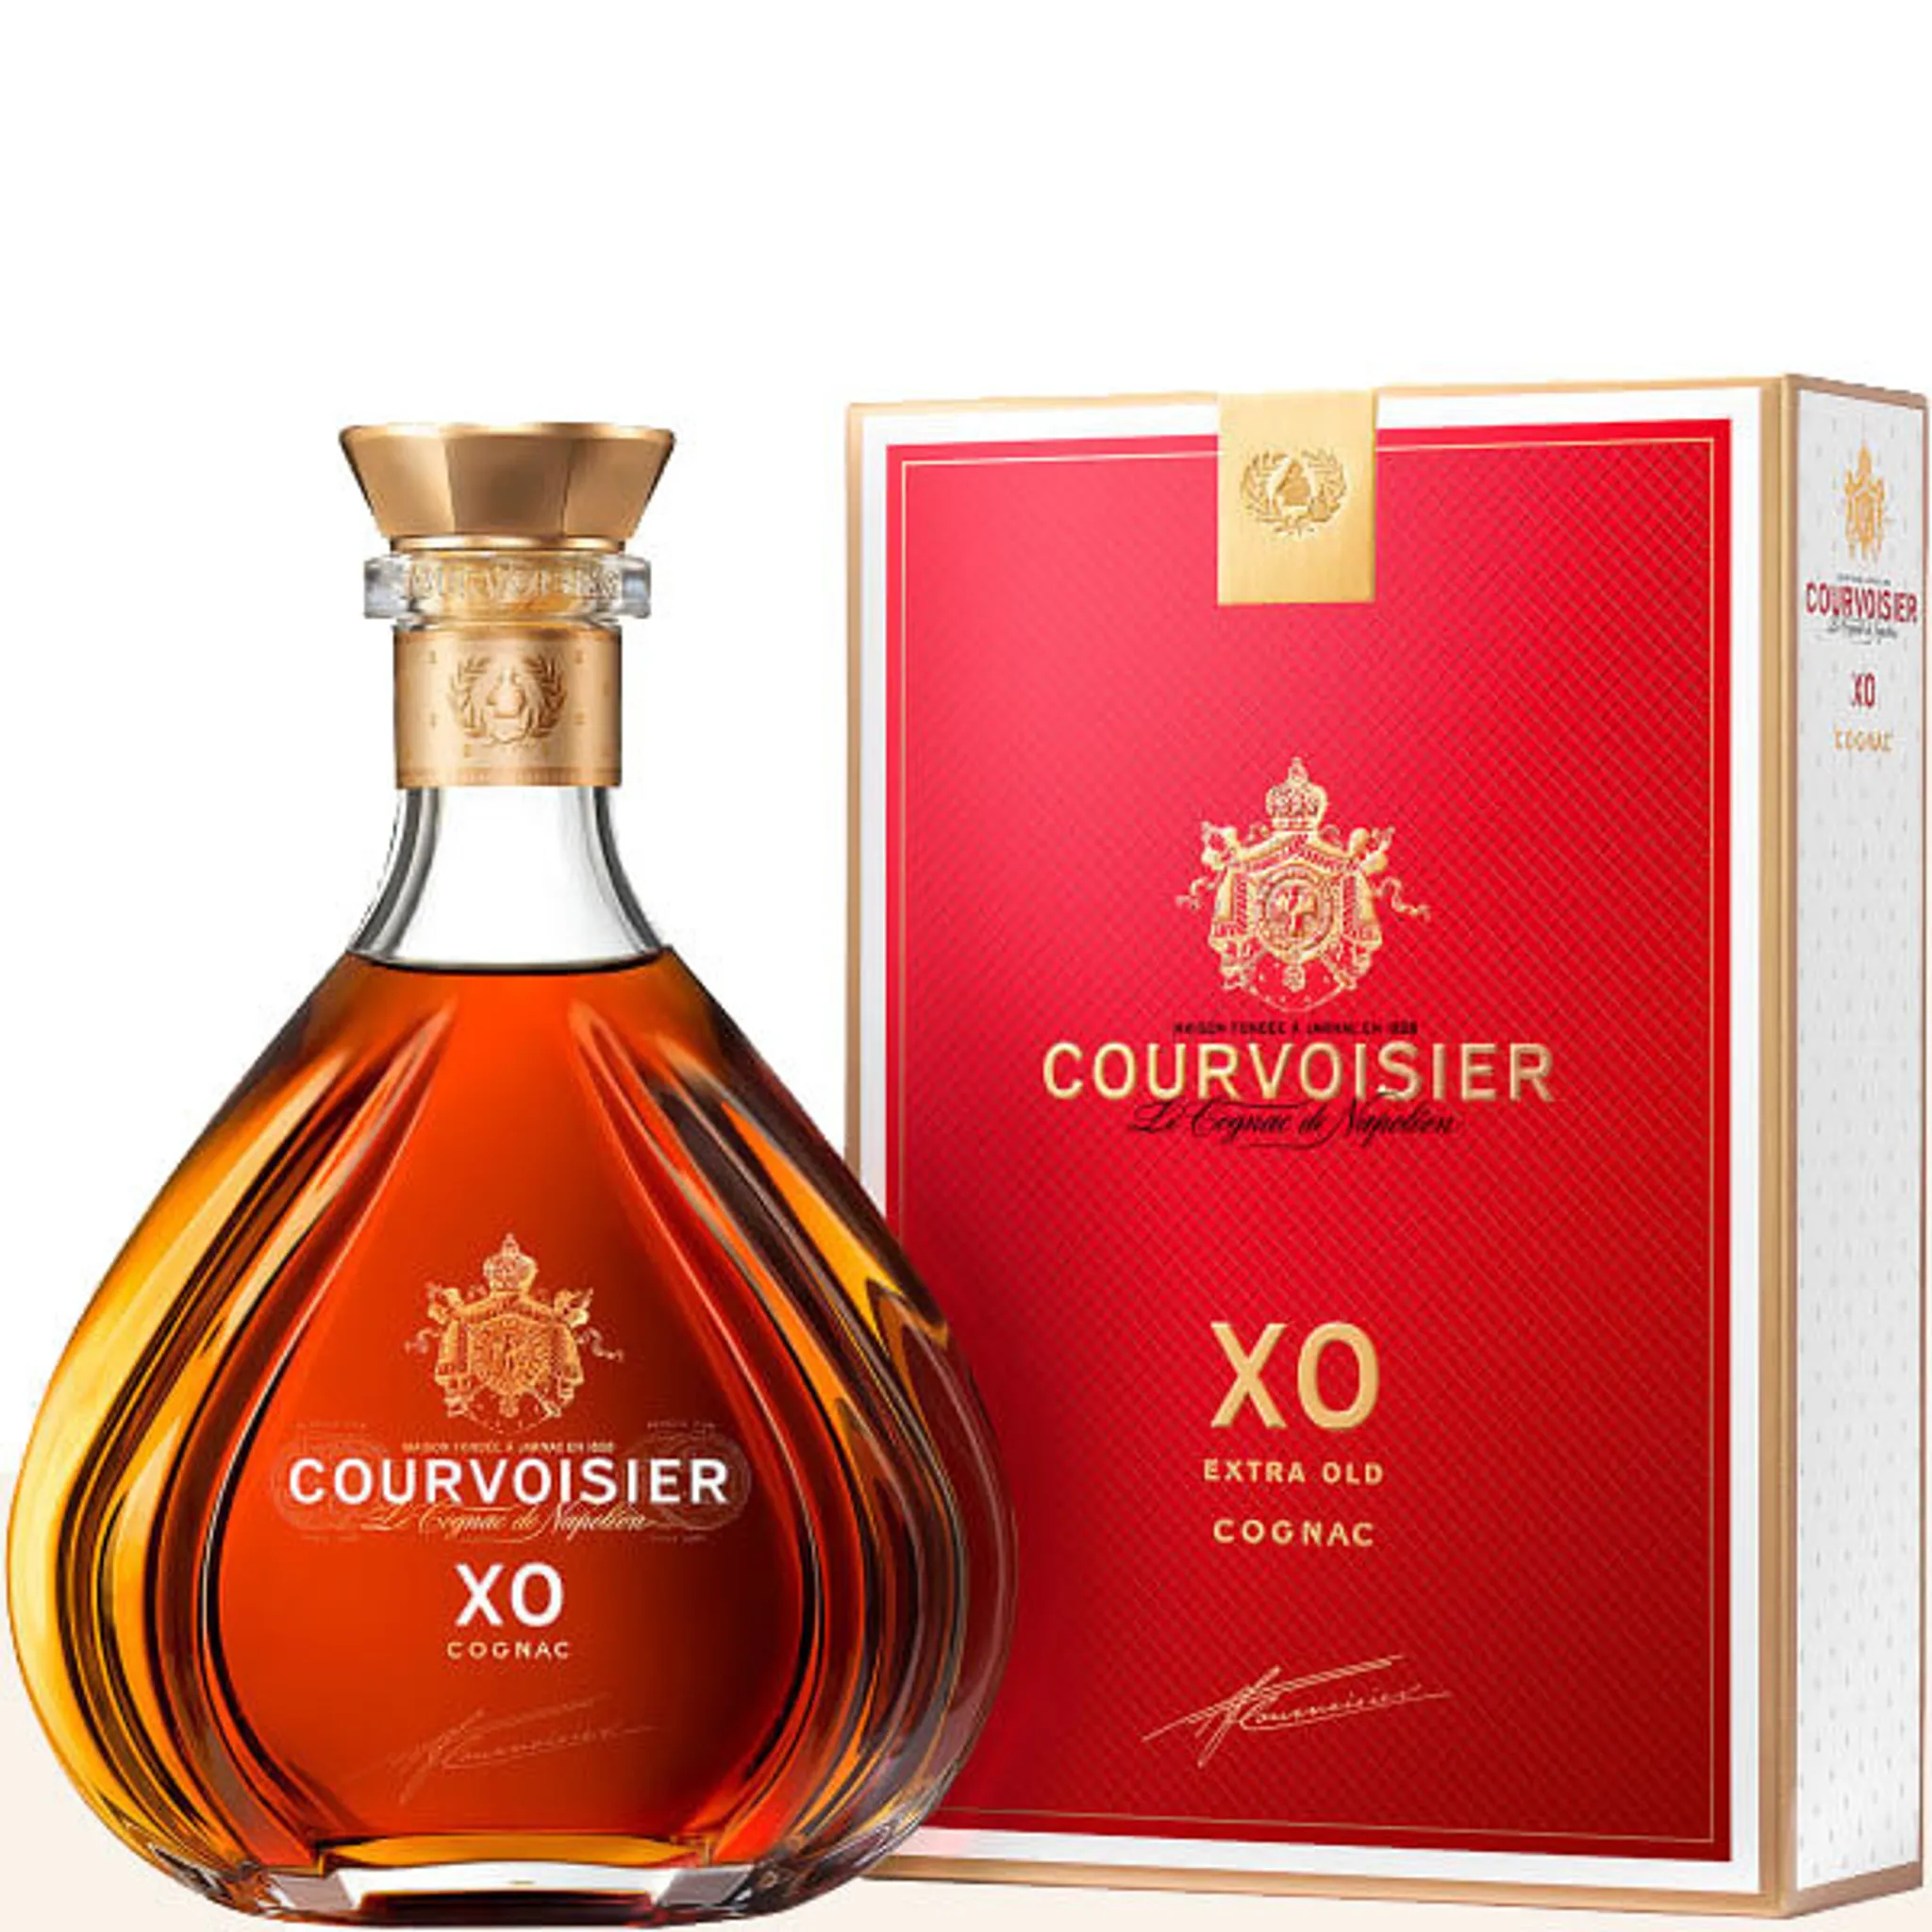 XO 40% Courvoisier Cognac in 0,7l Vol.